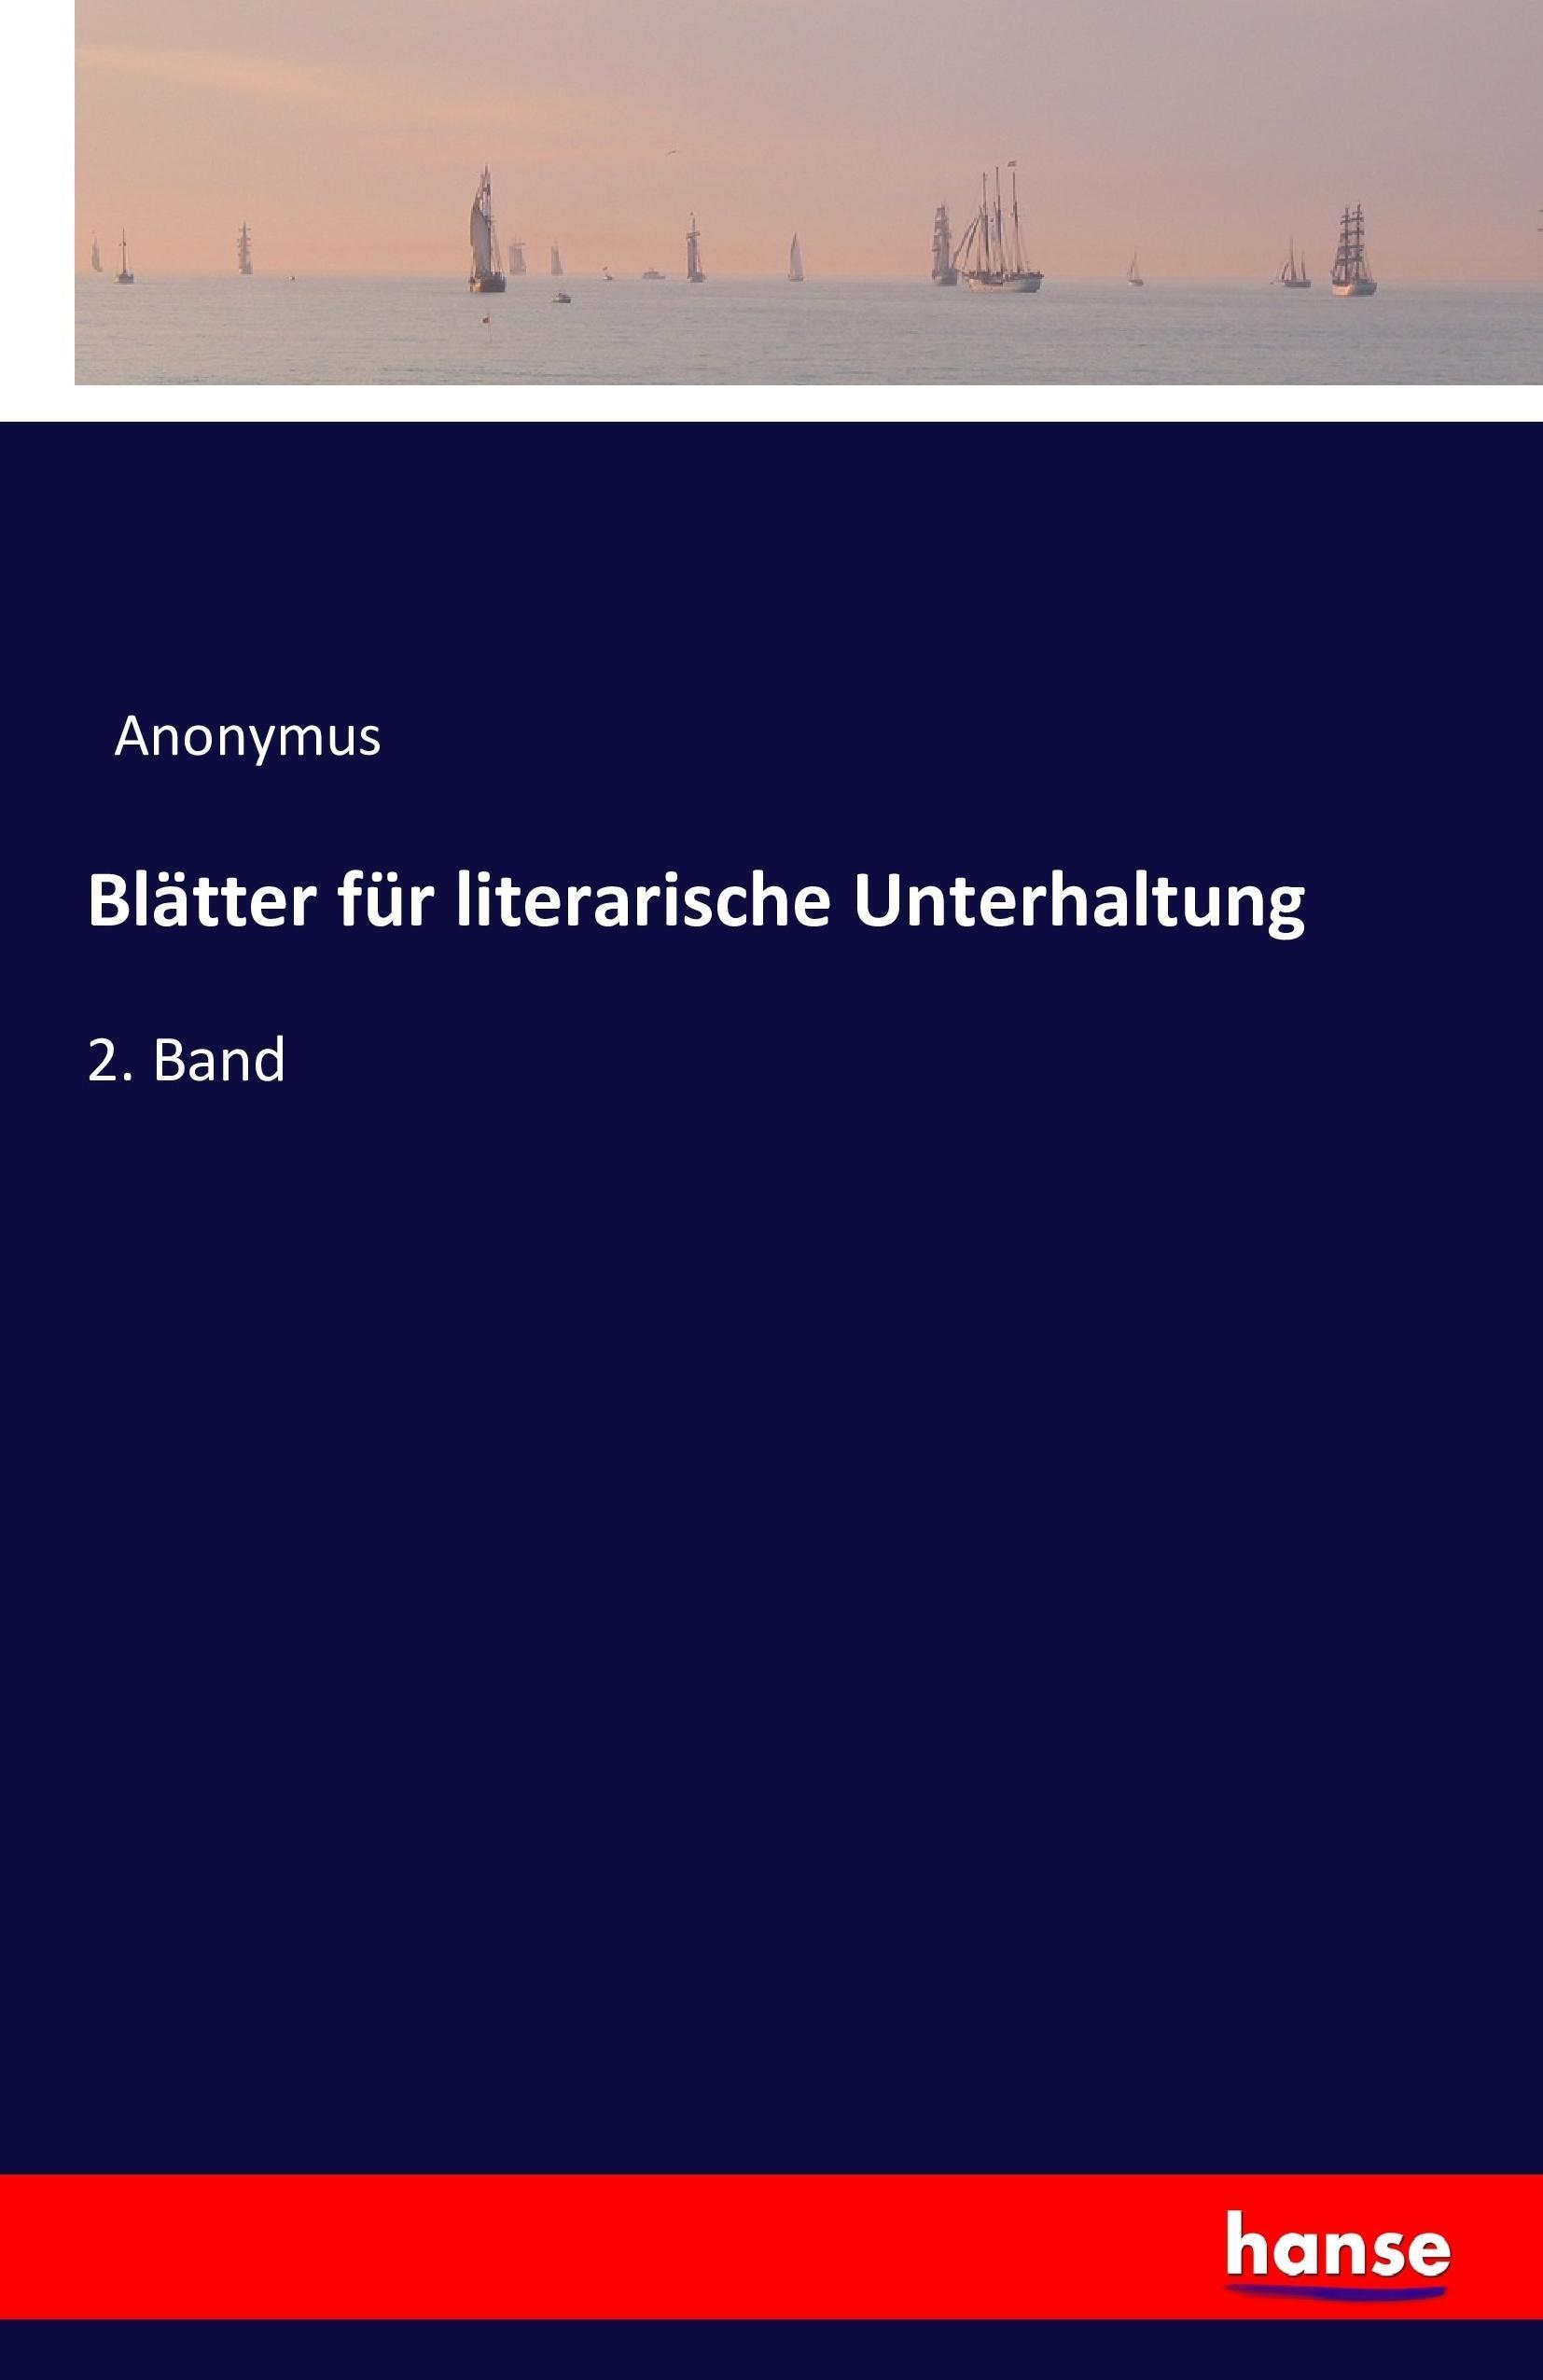 Blaetter fuer literarische Unterhaltung - Anonym